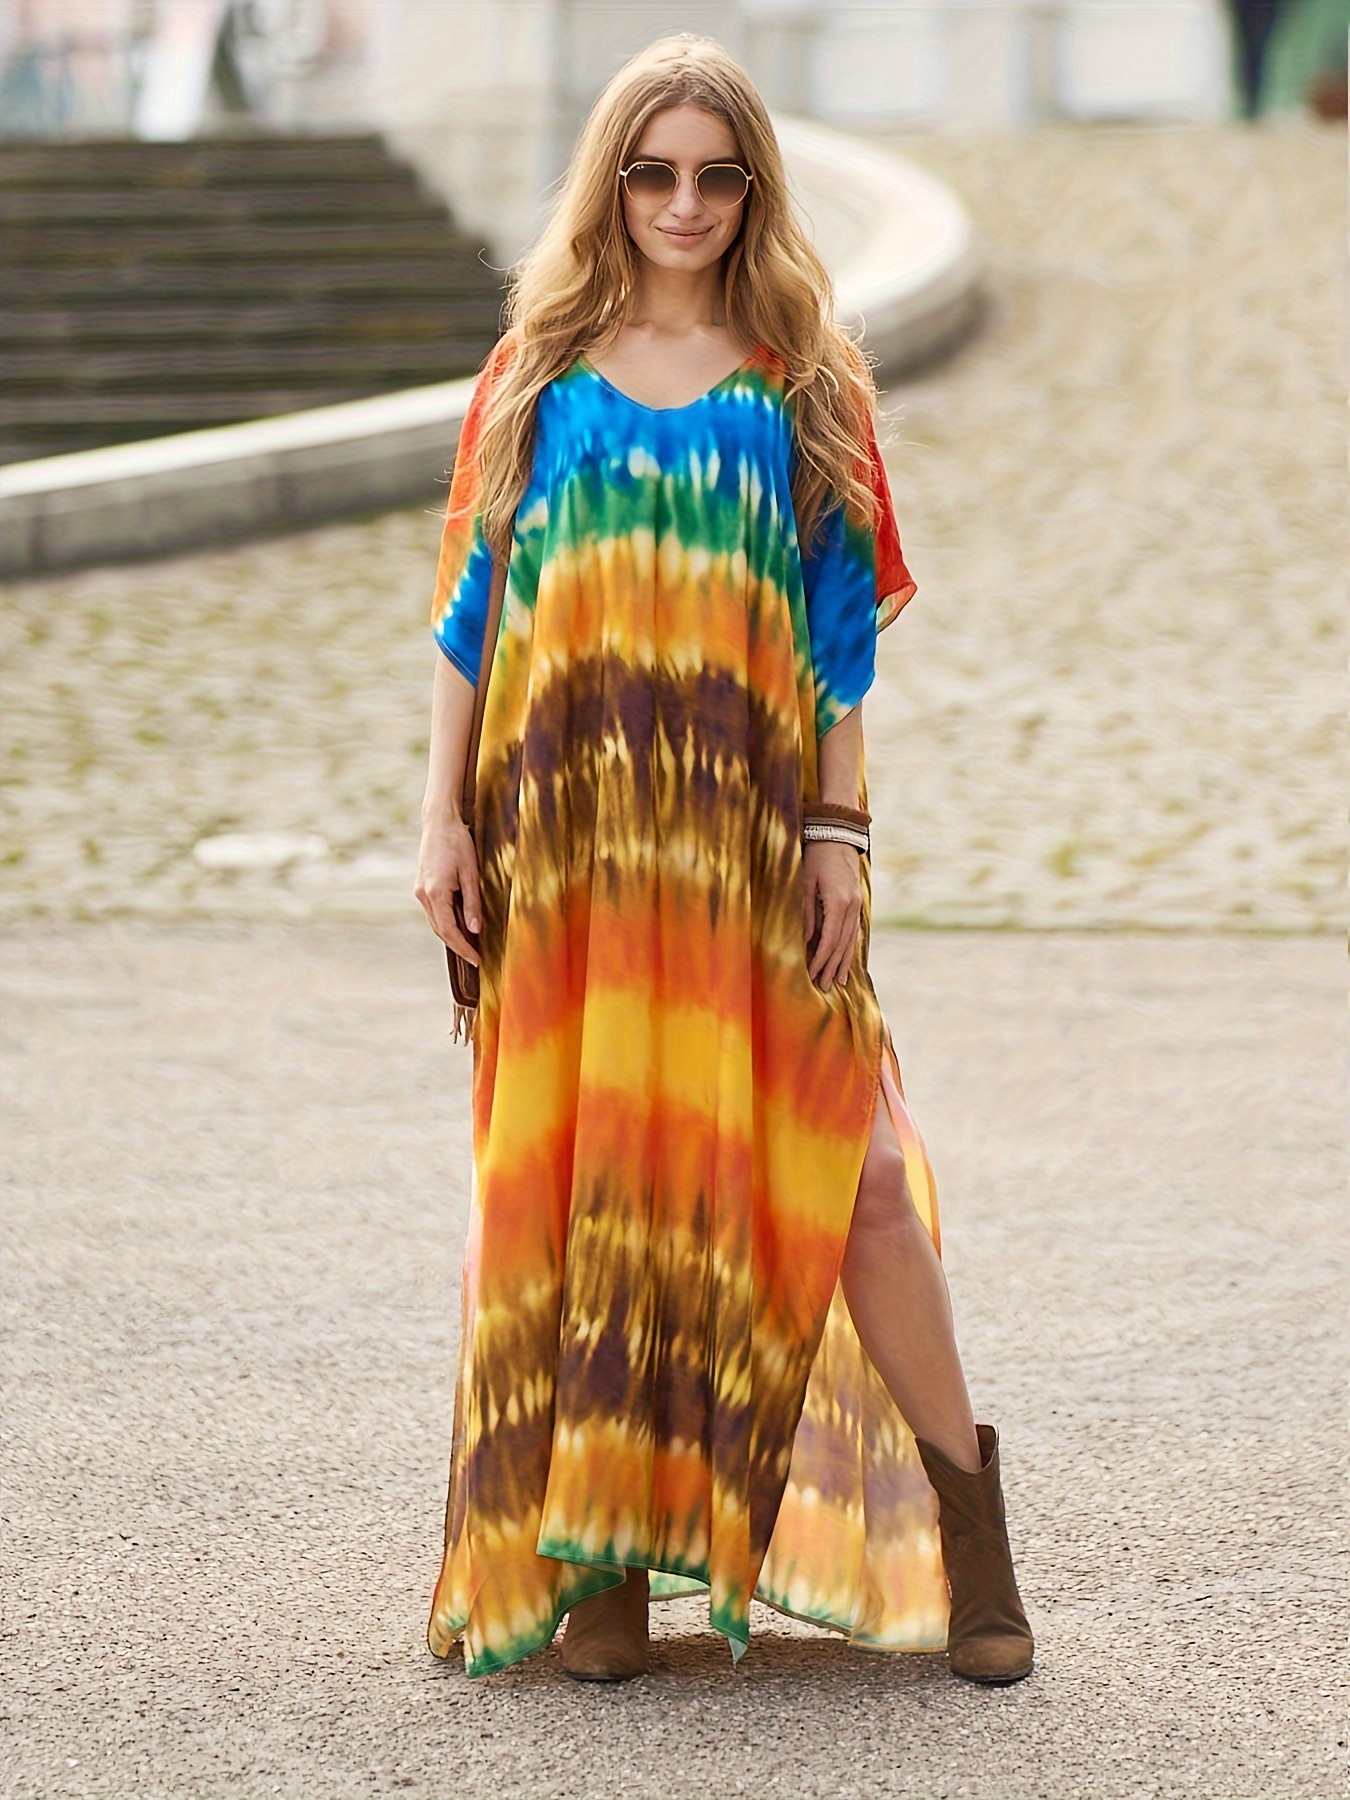 Tie dye swirl dress, Hippie Festival maxi dress, Long Sleeve